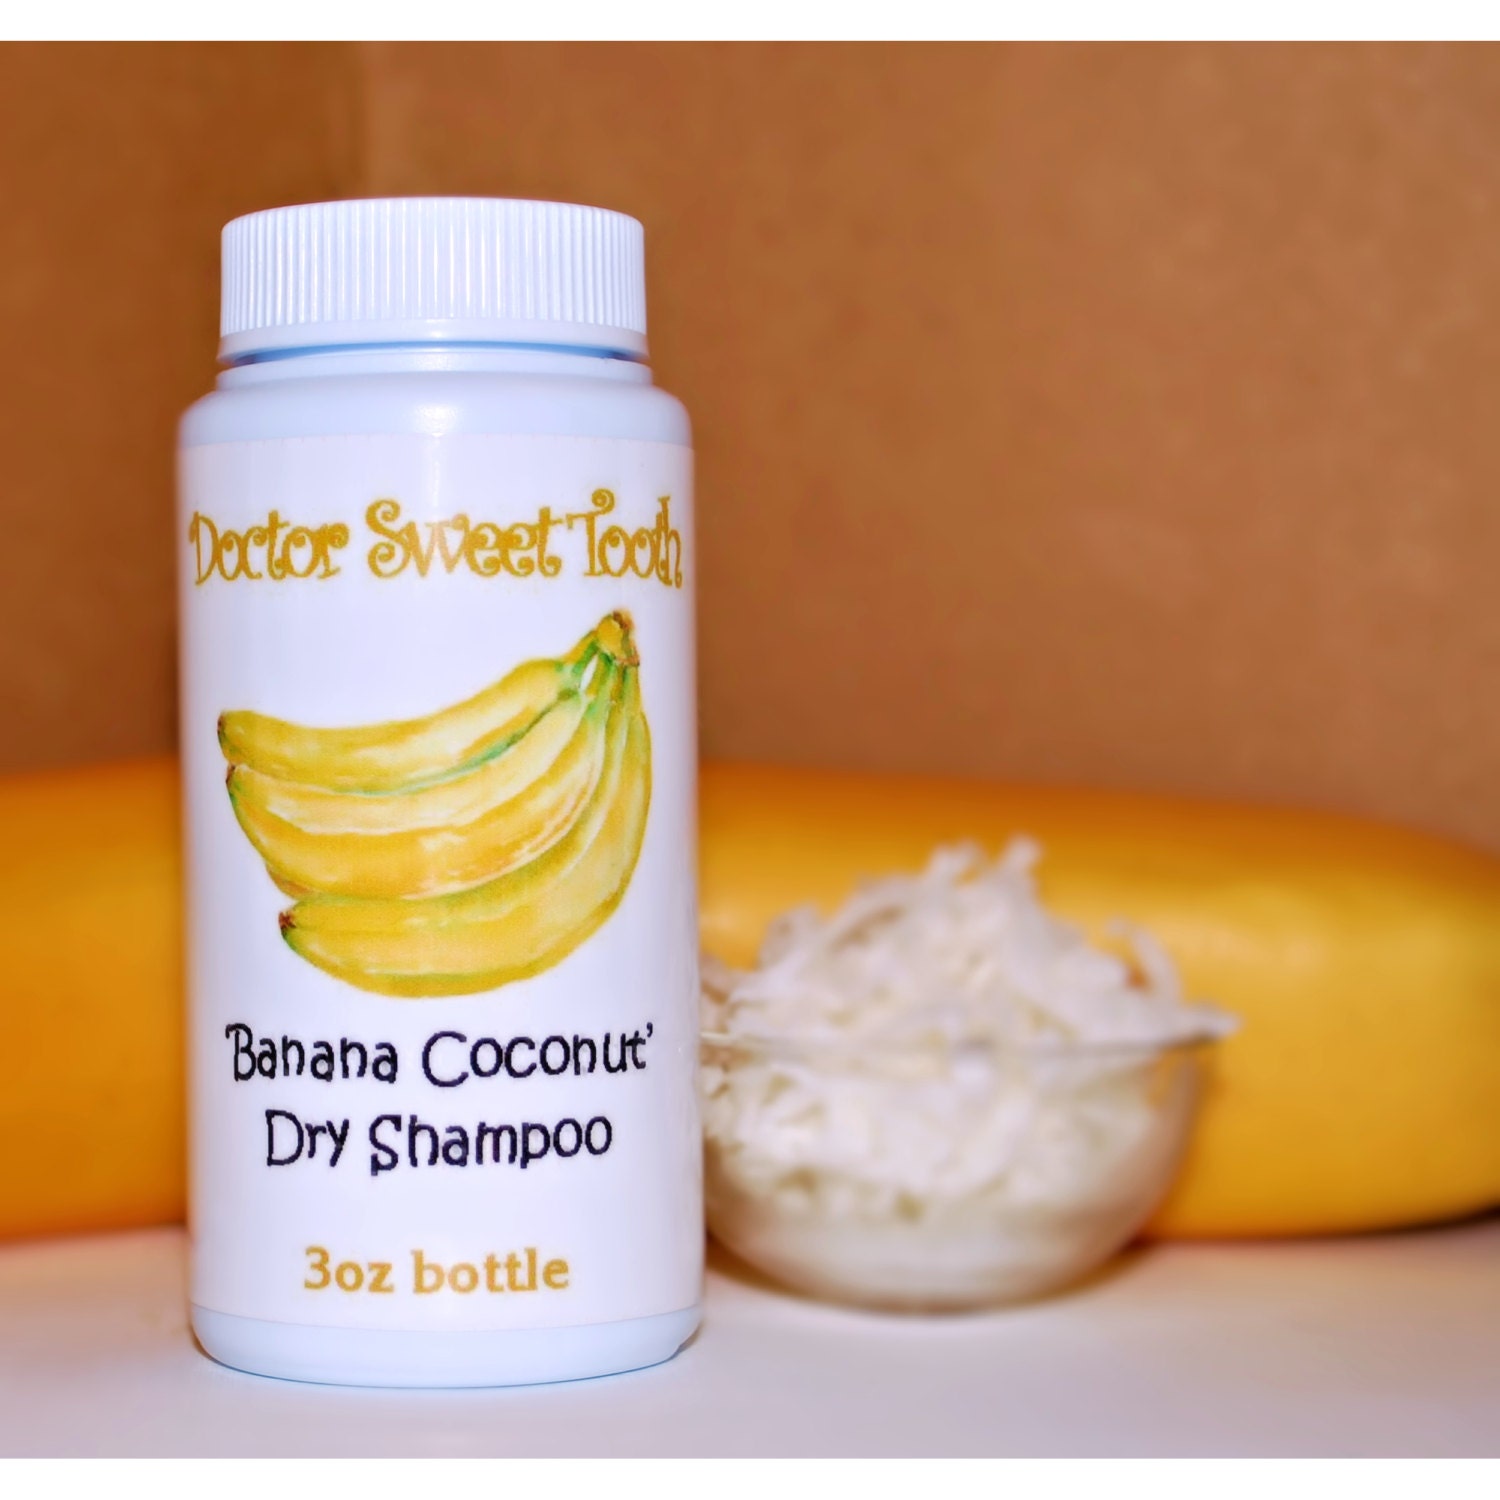 Banana Coconut Dry Shampoo